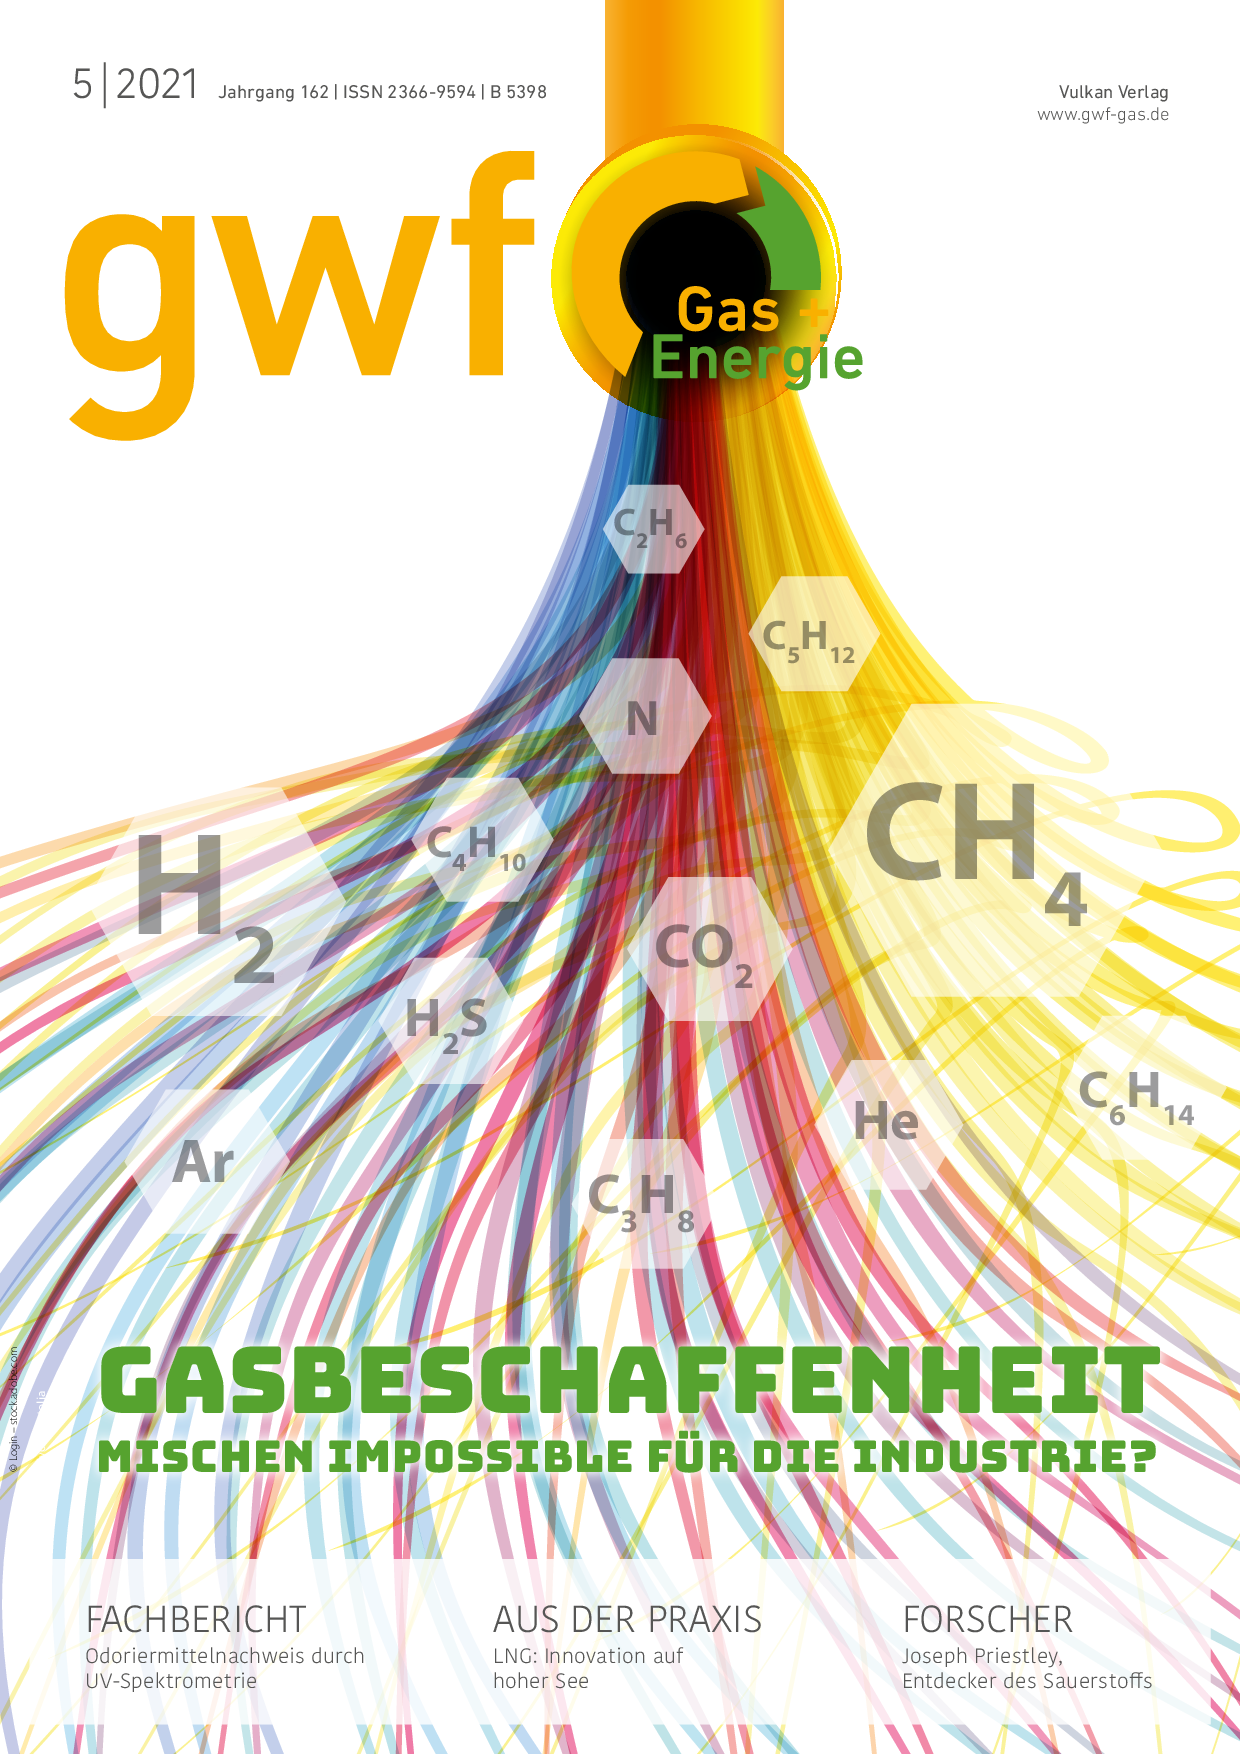 gwf Gas+Energie - 05 2021